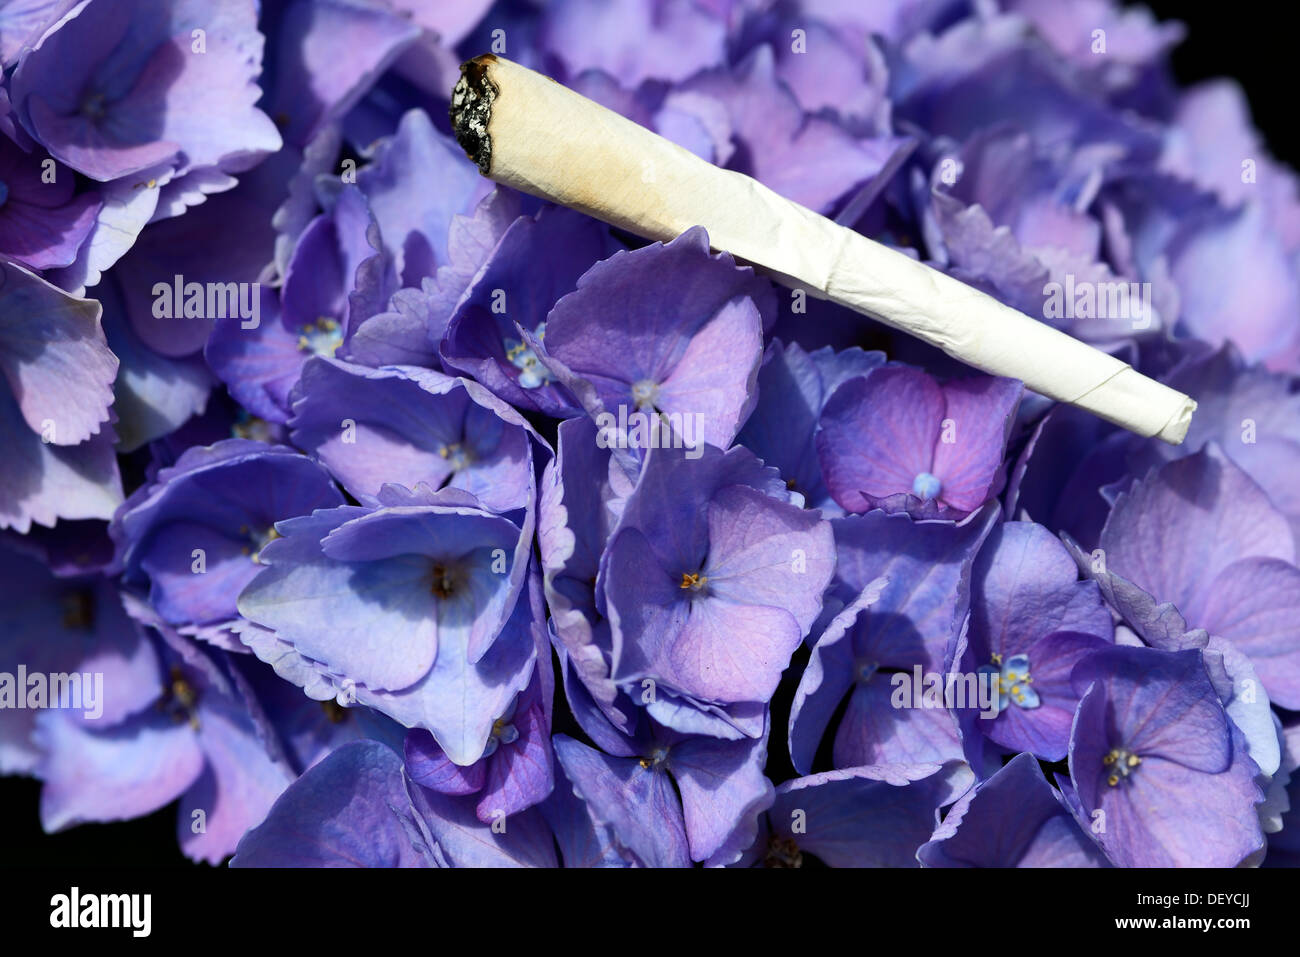 Giunto su una hydrangea, fumo da fogli di ortensie, Joint auf einer Hortensie, rauchen von Hortensienblättern Foto Stock